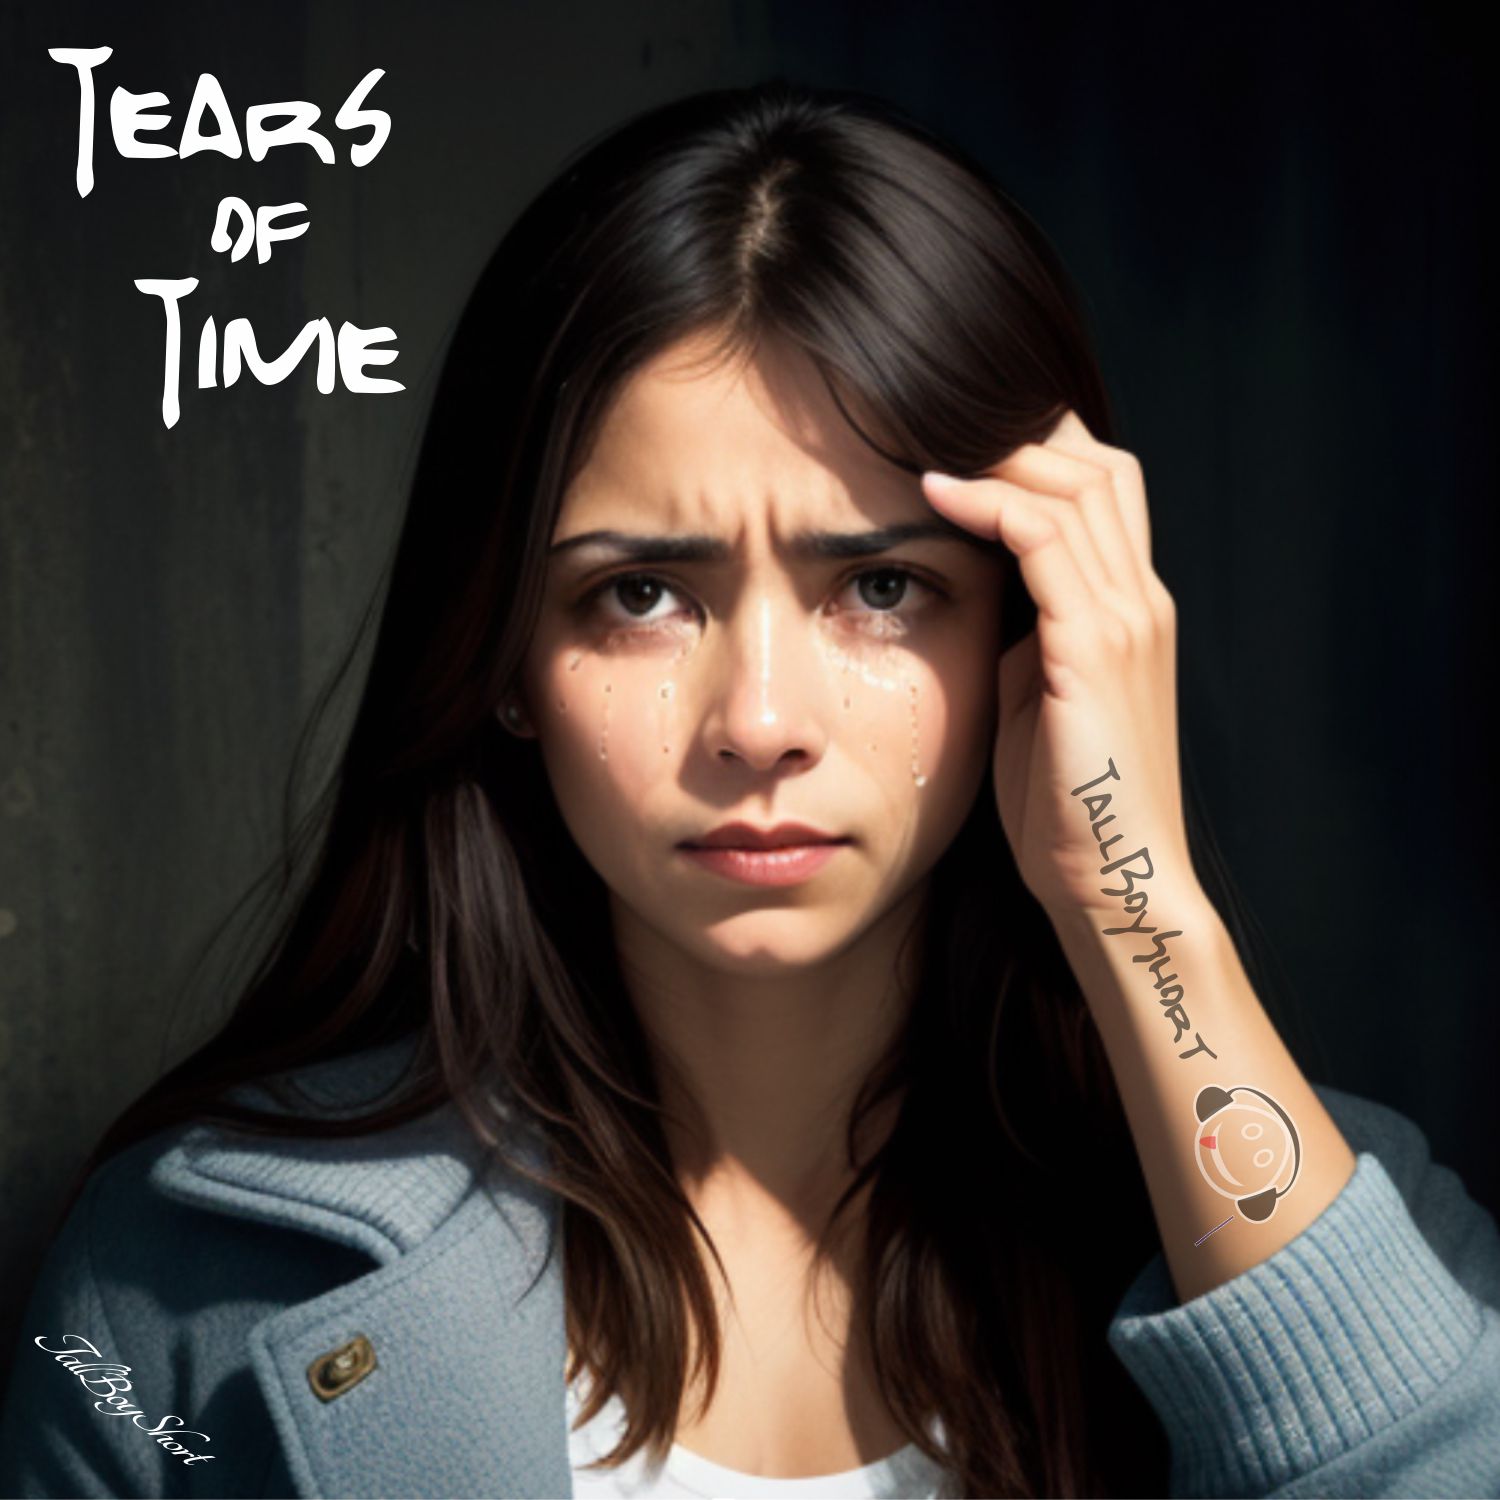 TBS - Tears of Time